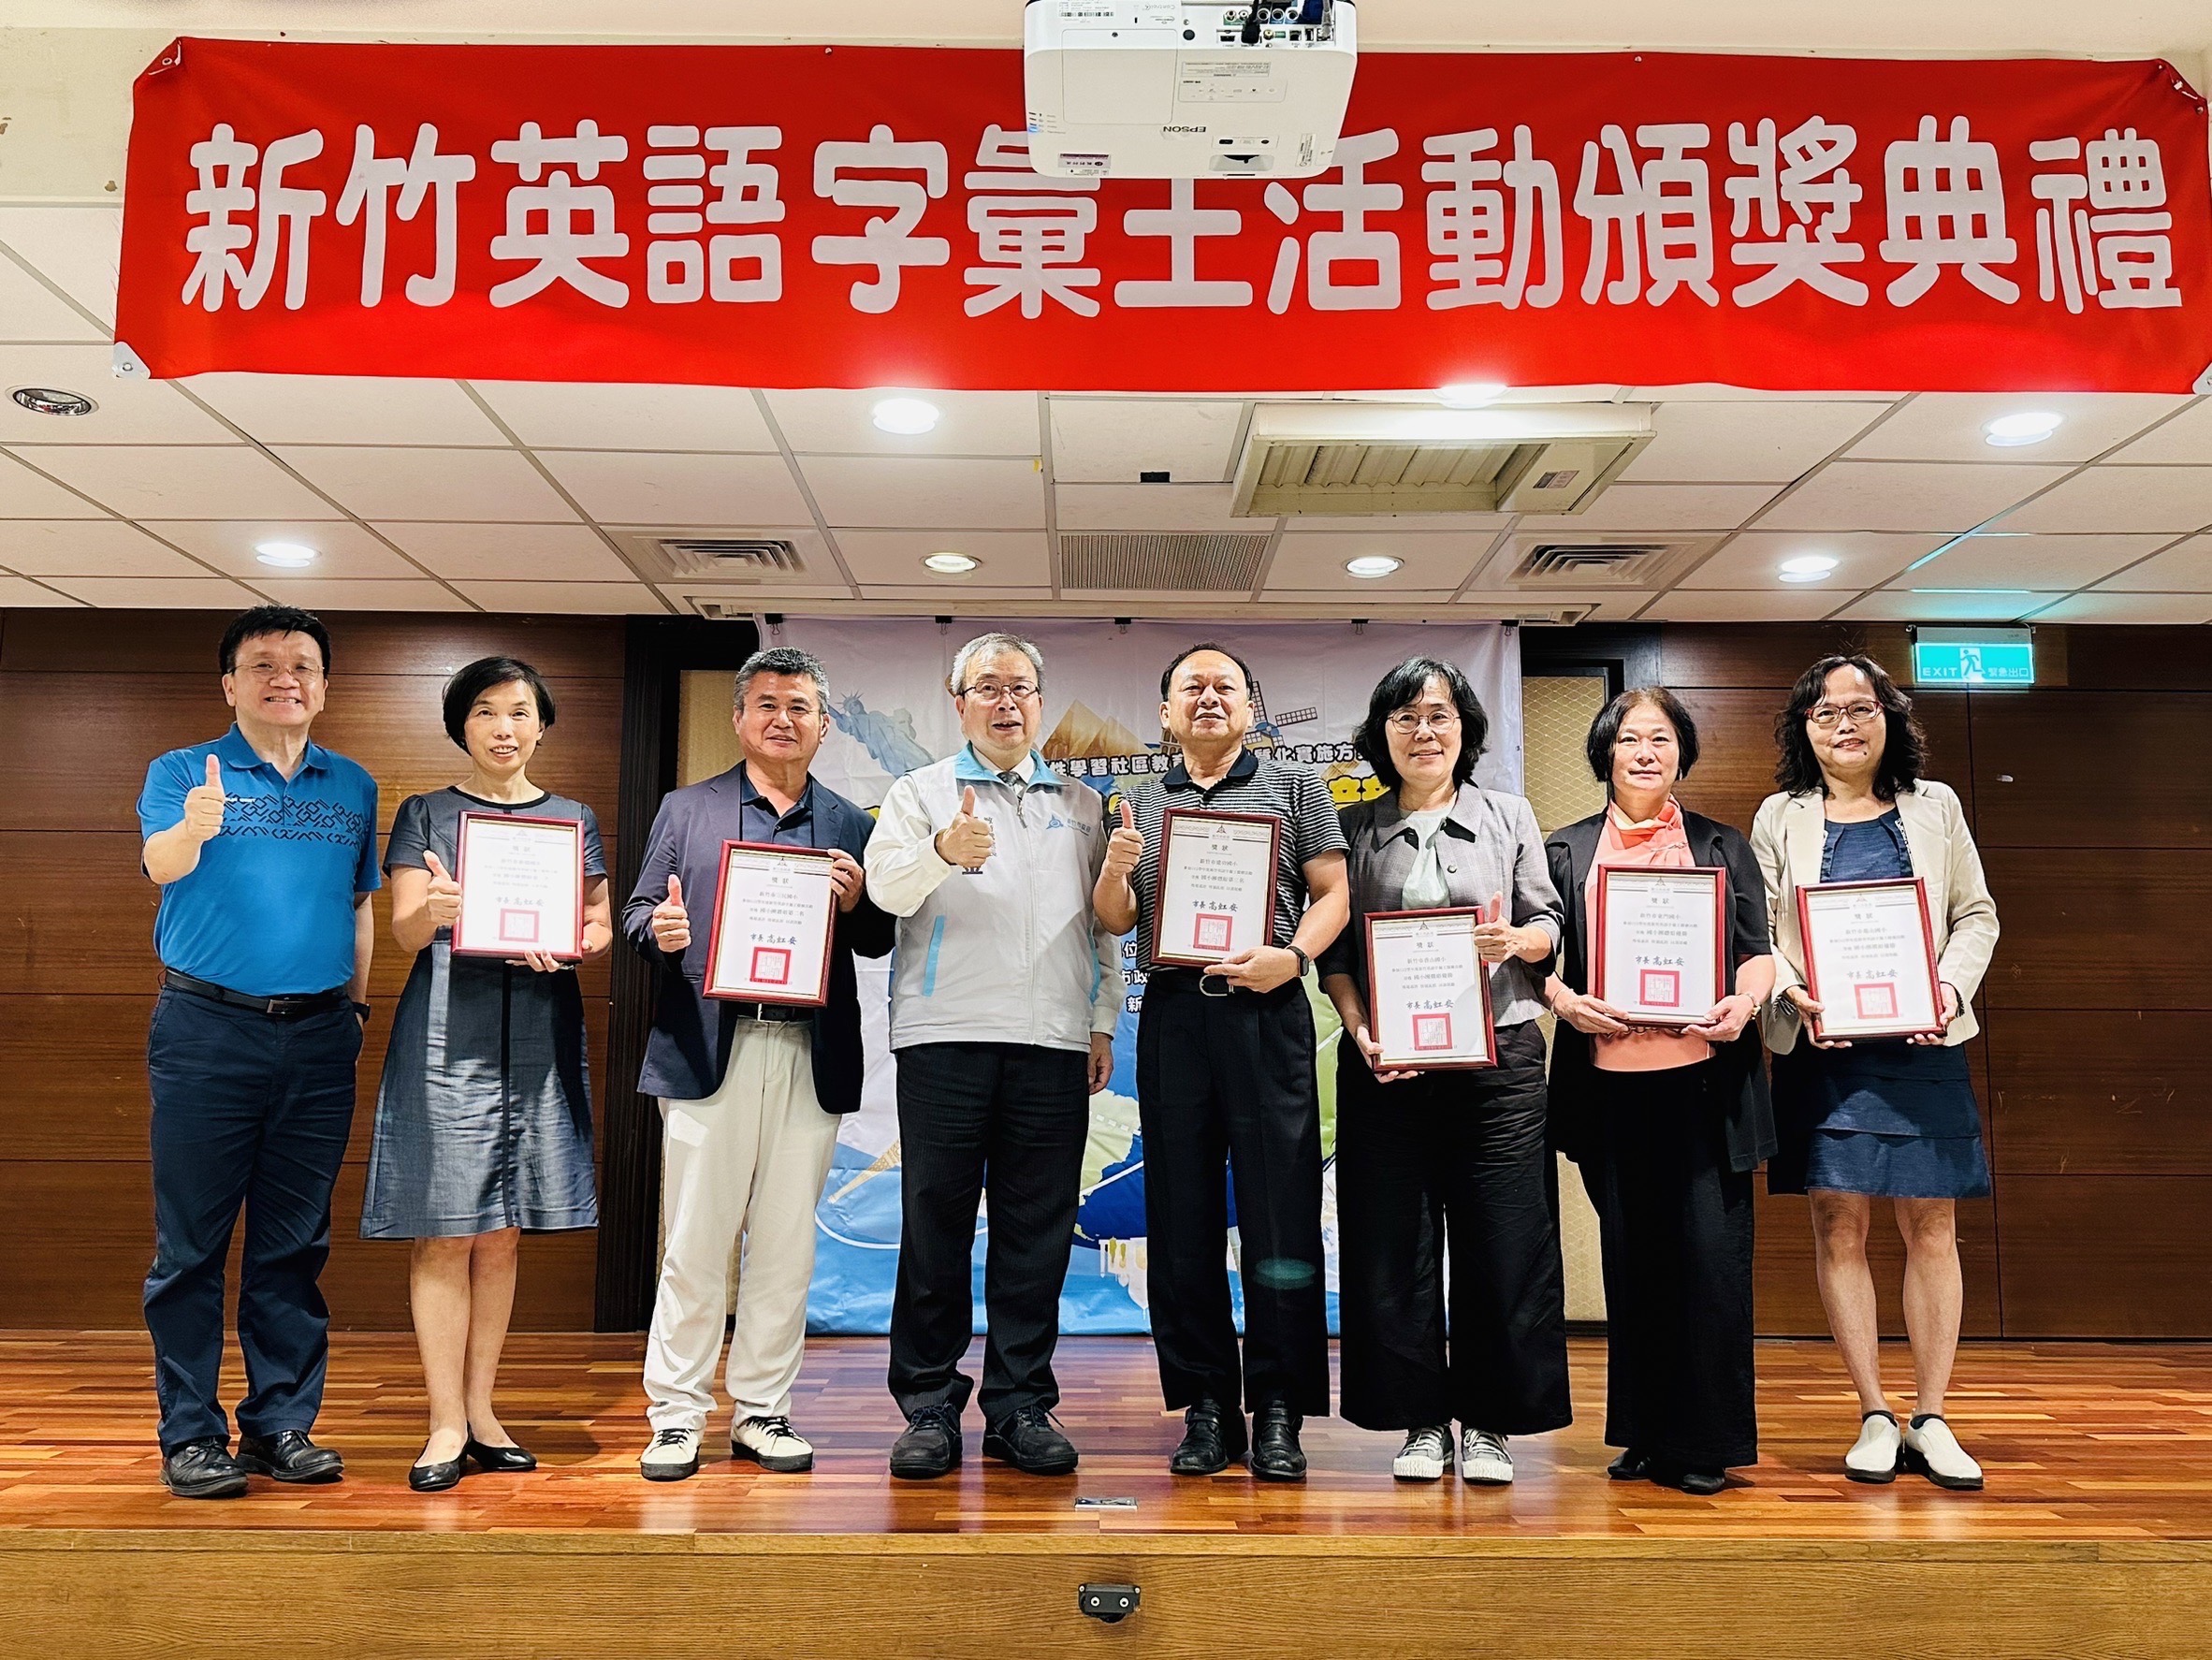 恭喜本校學生參加112學年度「新竹英語字彙王競賽」團體組與個人組榮獲佳績!!!活動照片